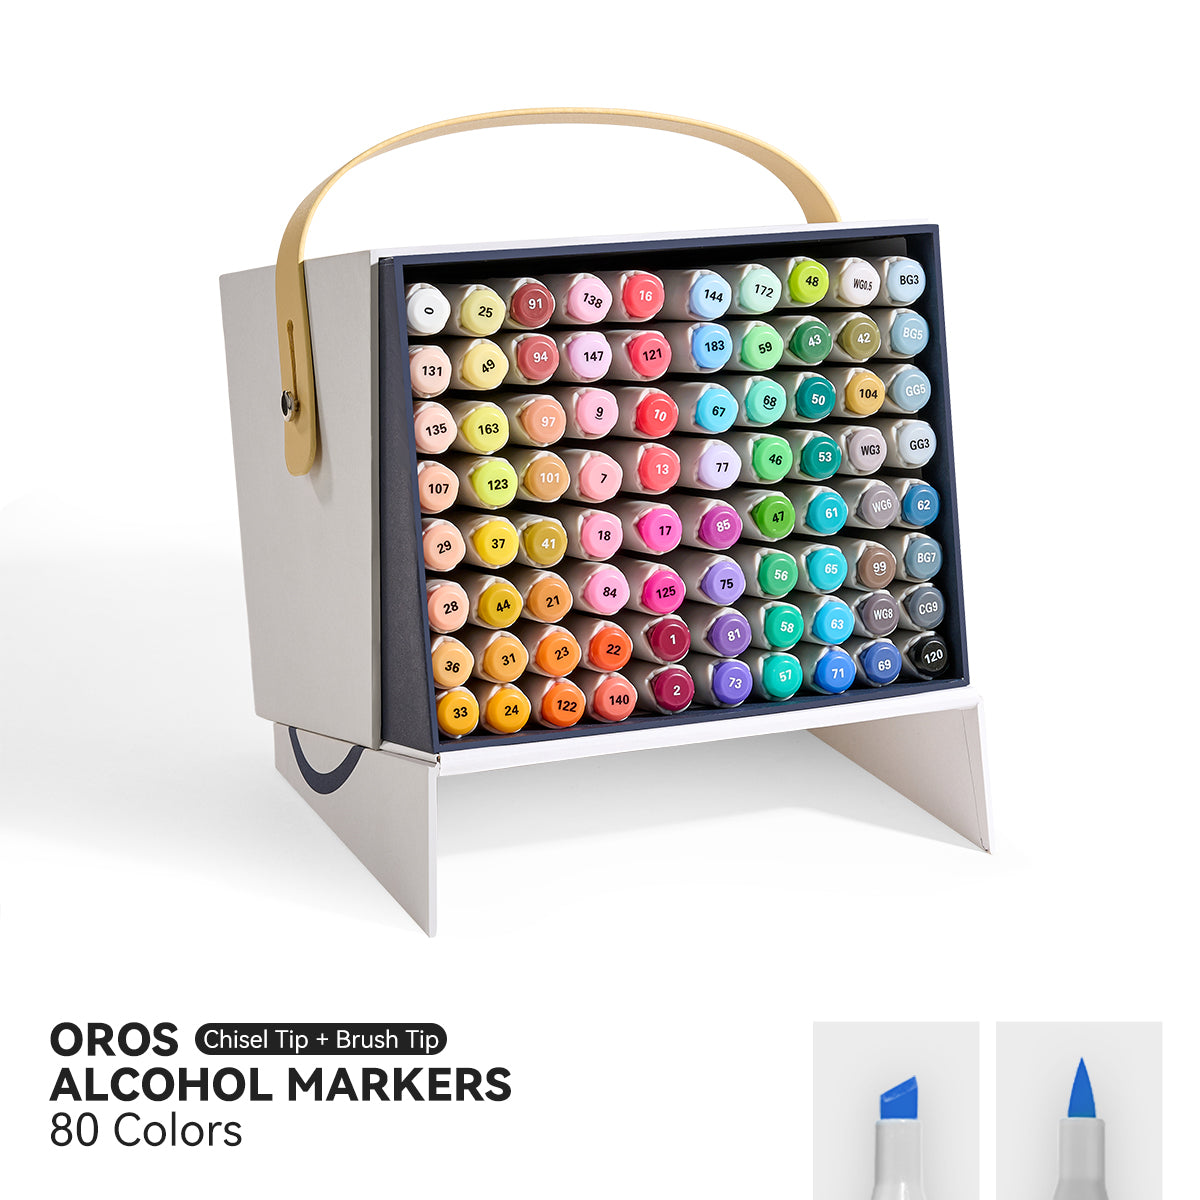 Arrtx OROS 80 Colors Alcohol Markers Paint Pen Set